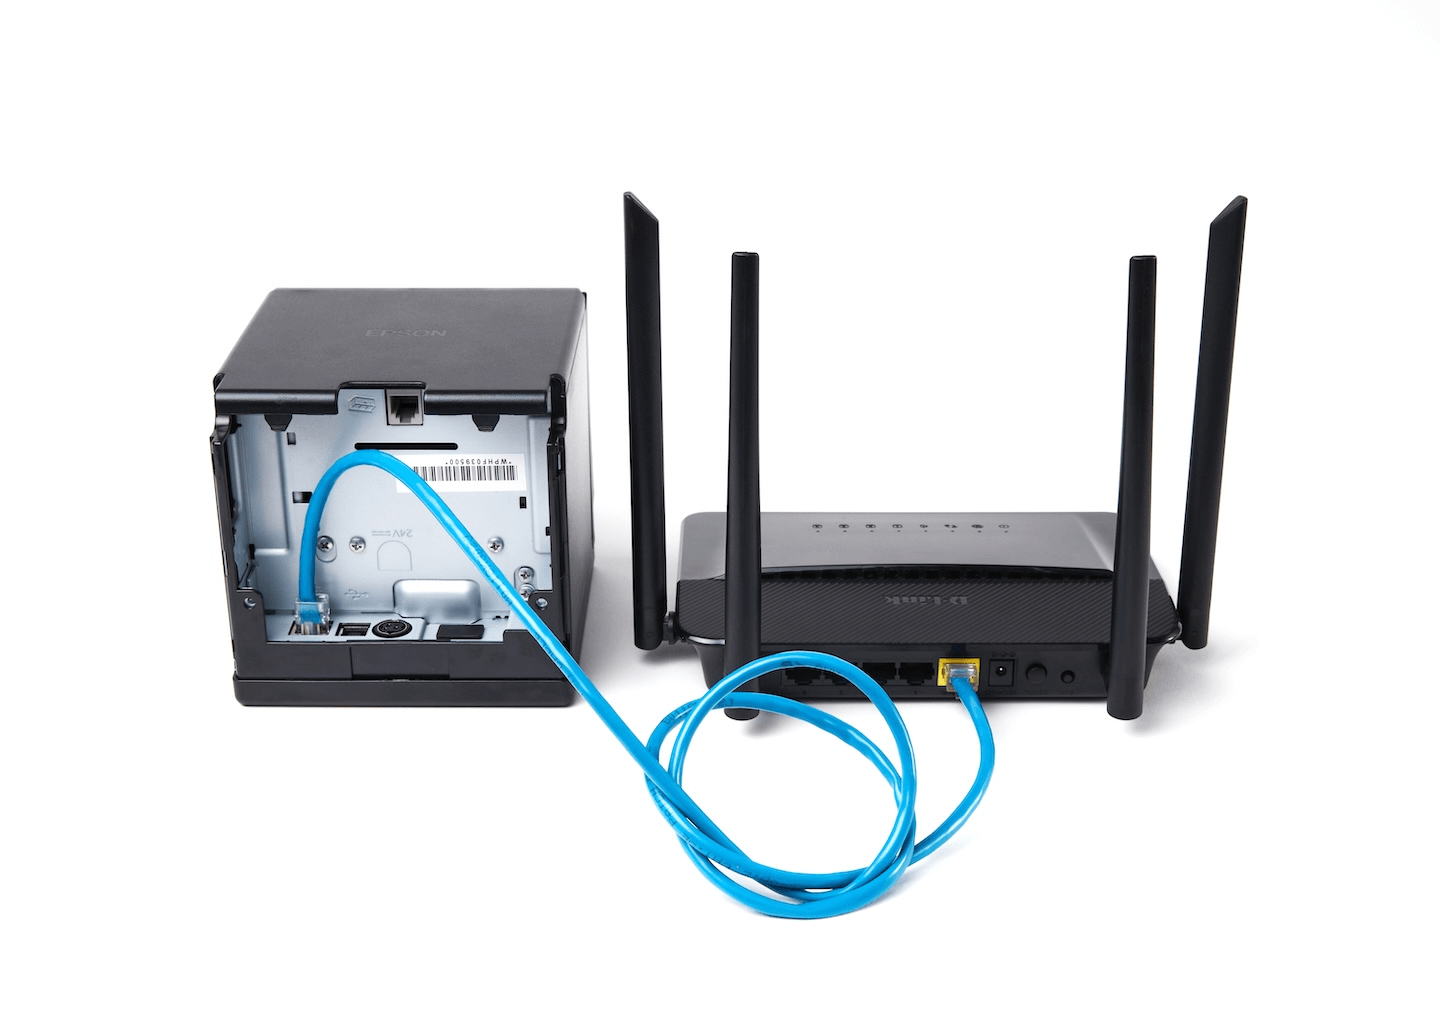 Câble Ethernet, avec une extrémité connectée à l'imprimante et l'autre extrémité connectée au routeur.